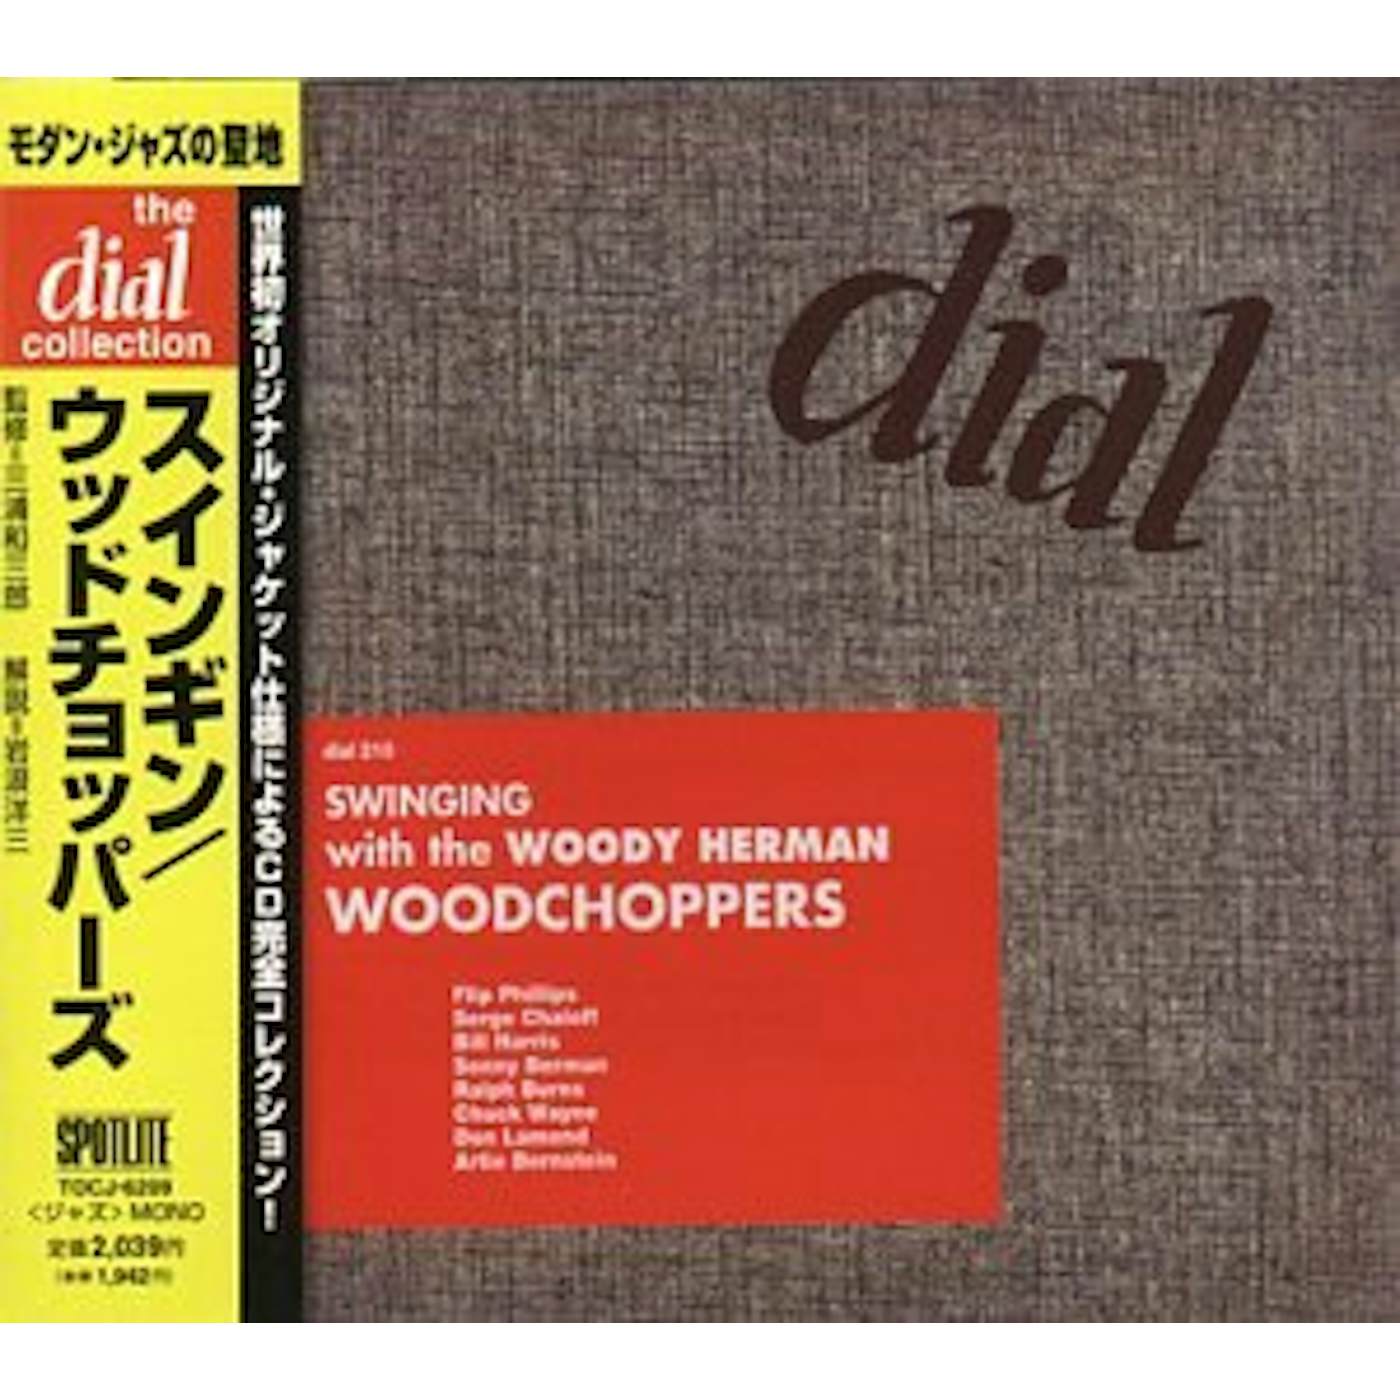 Woody Herman WOOD CHOPPERS CD